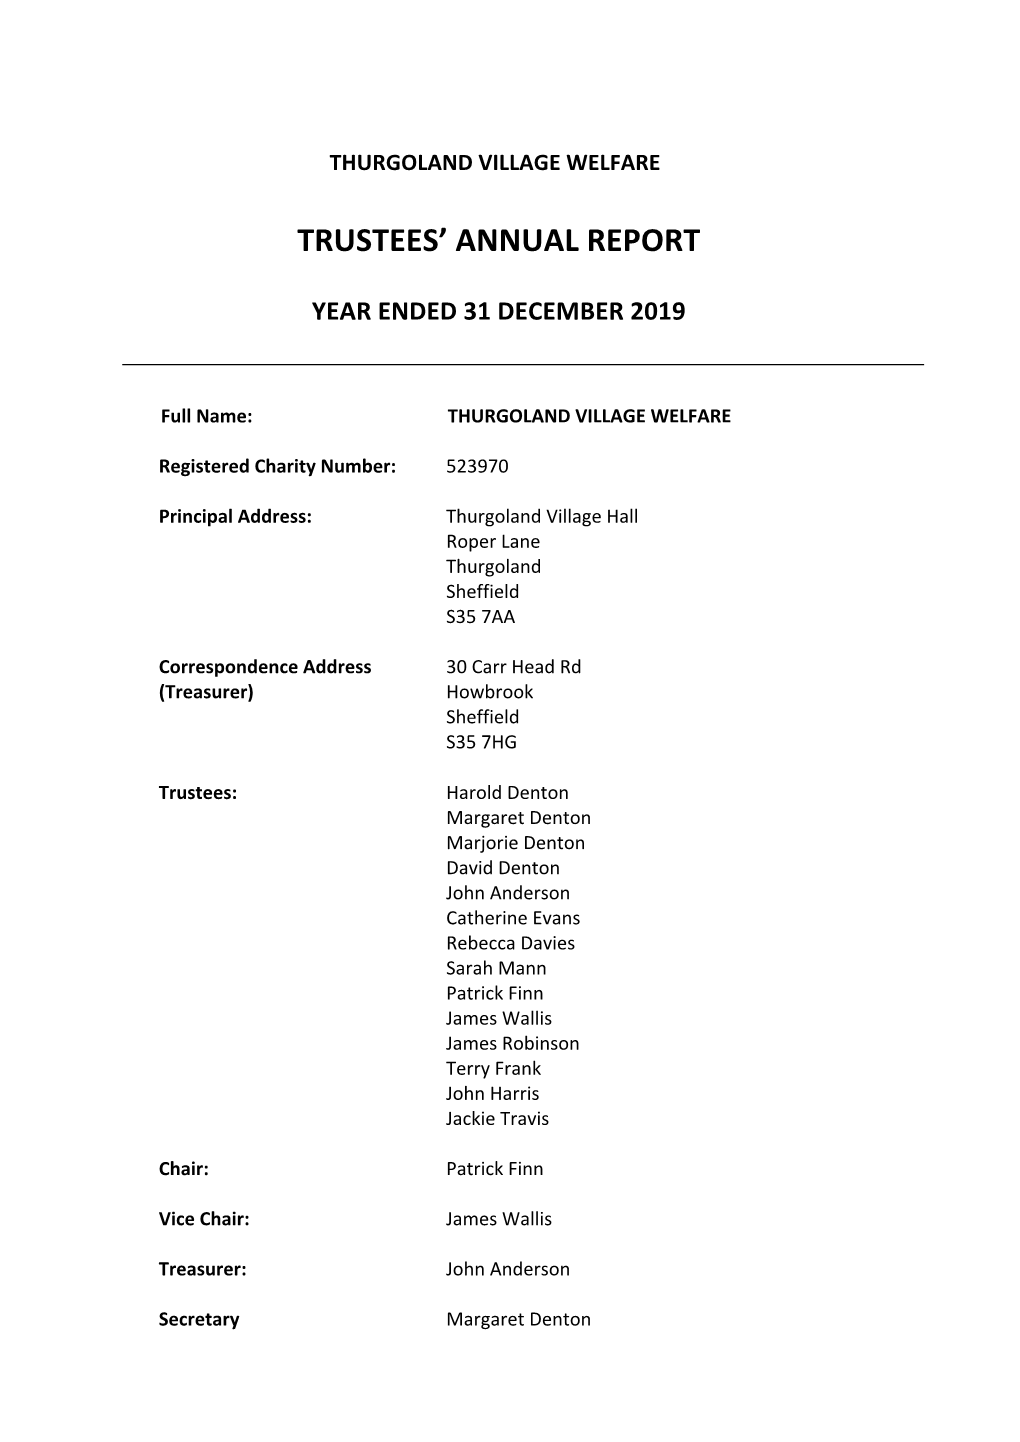 Trustees' Annual Report